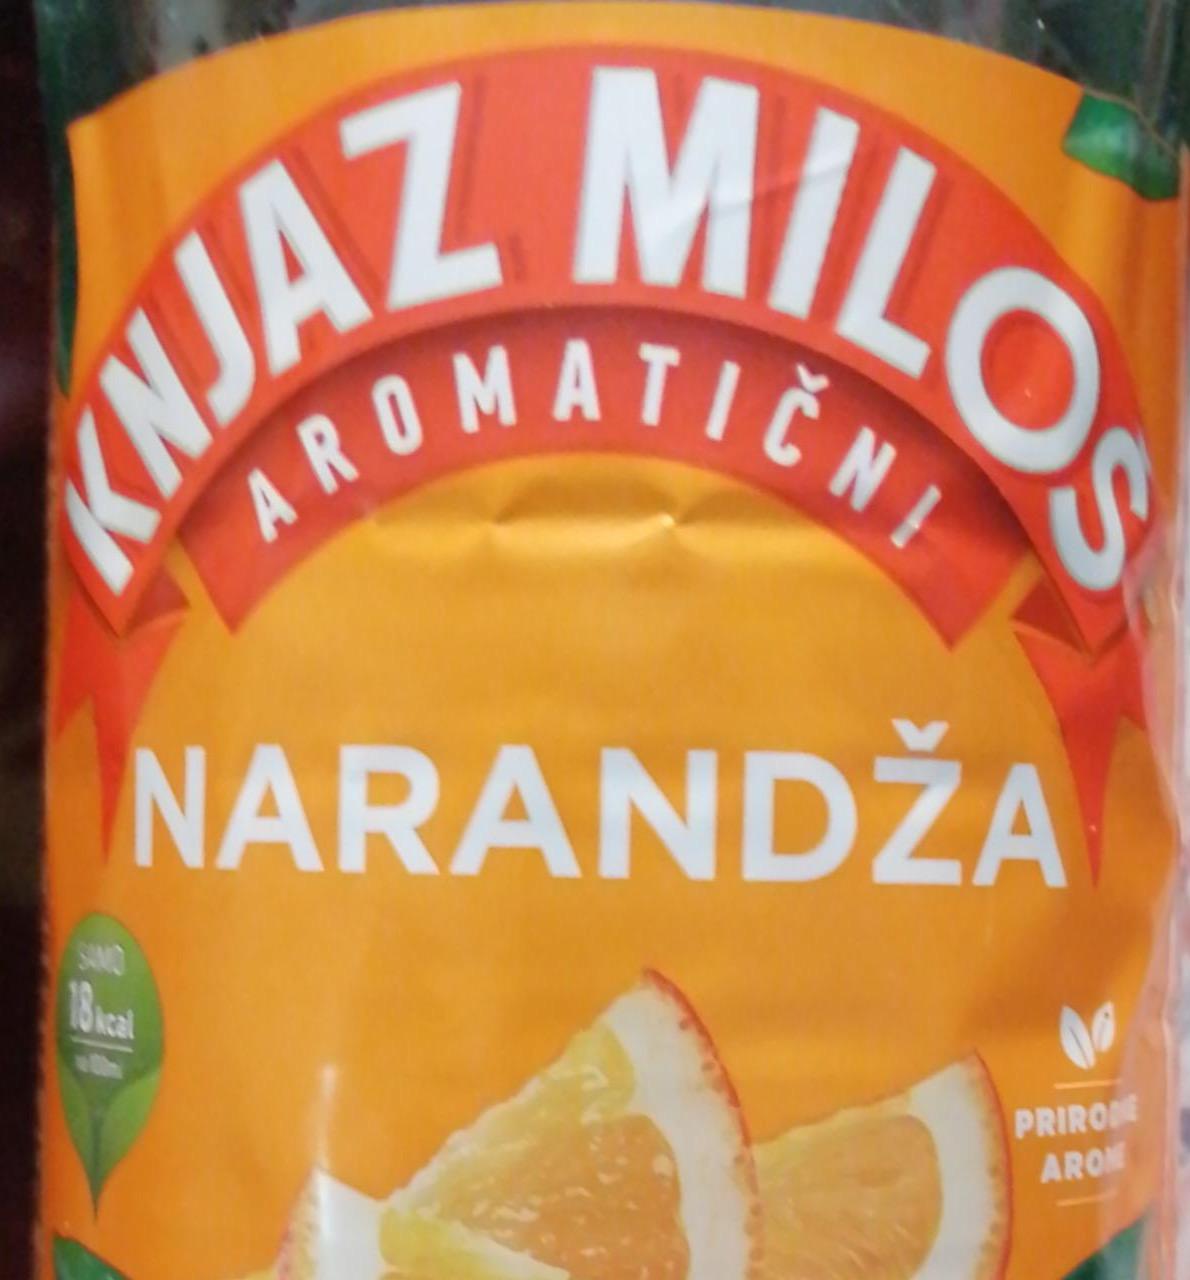 Képek - Narandža narancsos víz Knjaz Milos